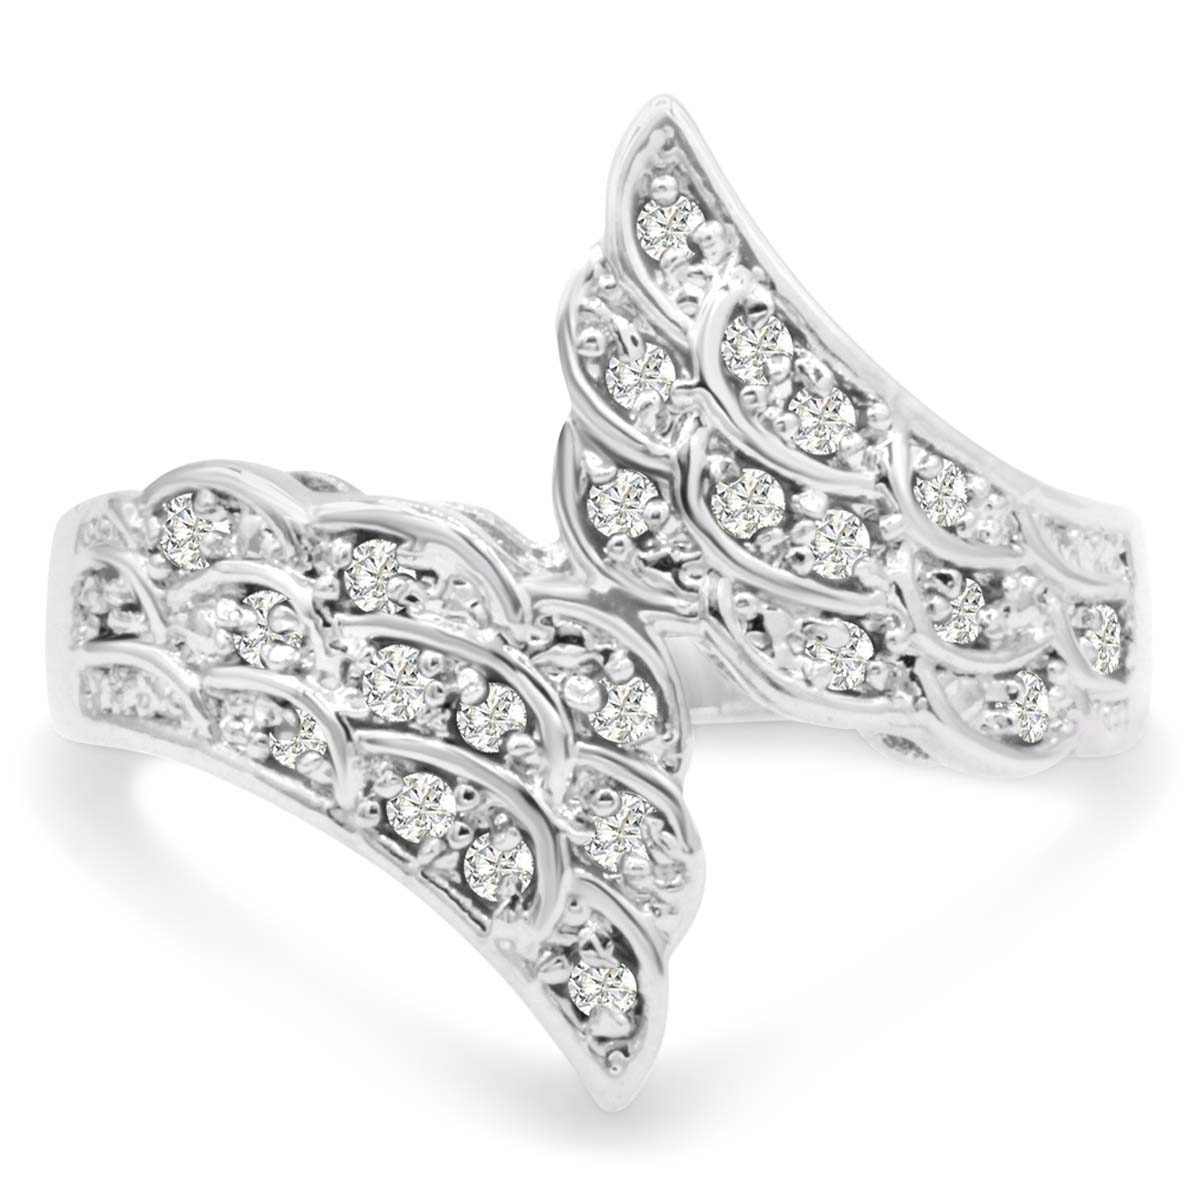 1/3 Carat Diamond Angel Wings Ring, J-K, Size 5 By SuperJeweler